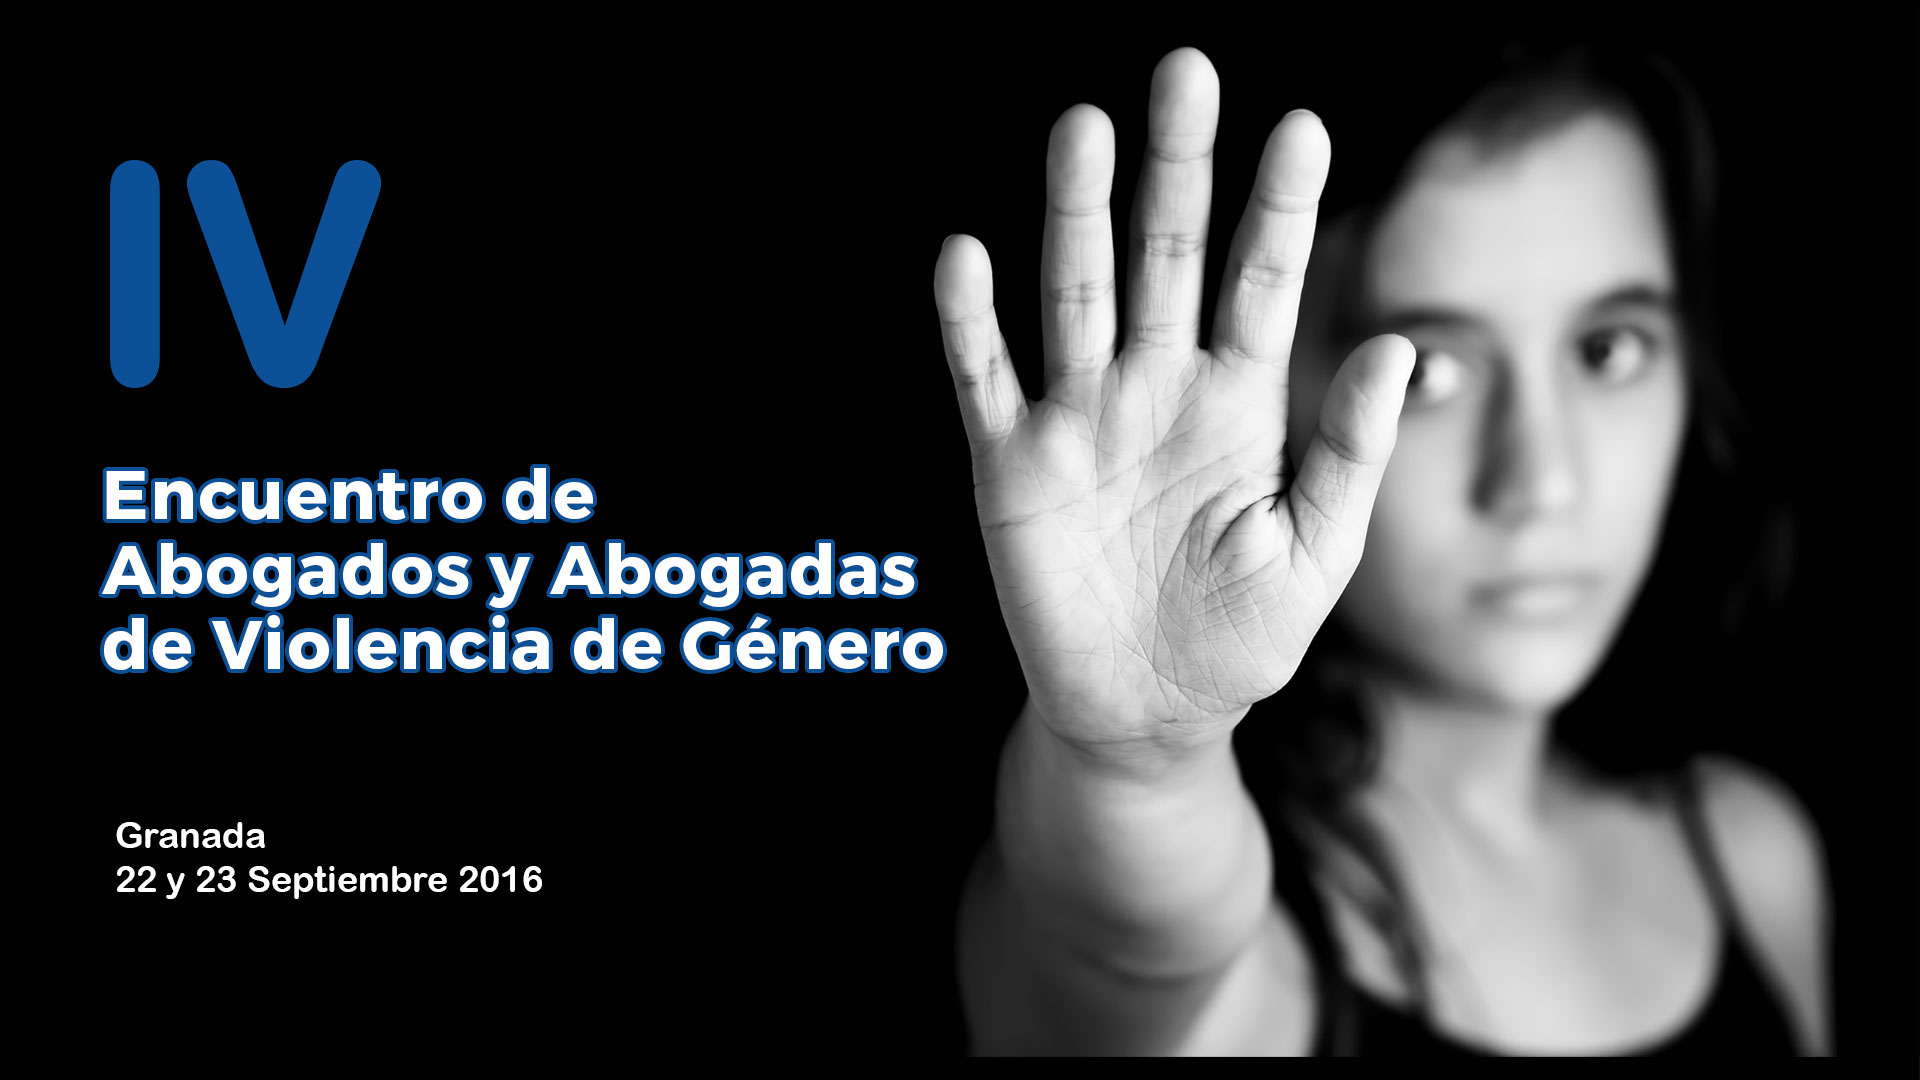 IV Encuentro de Abogados y Abogadas de Violencia de Género